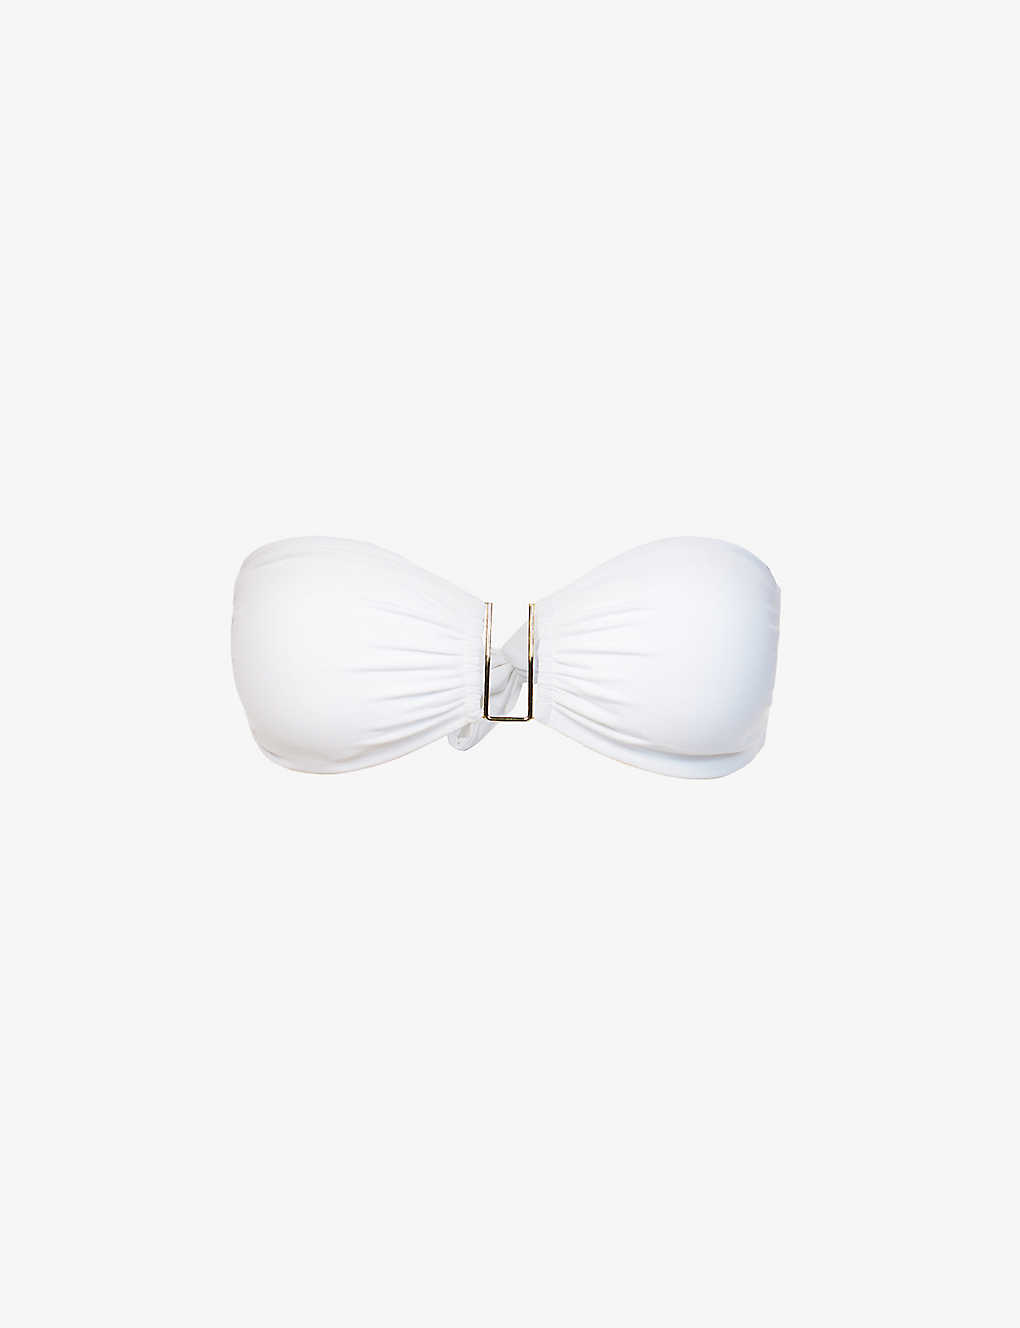 Shop Melissa Odabash Womens White Barcelona Bandeau Bikini Top